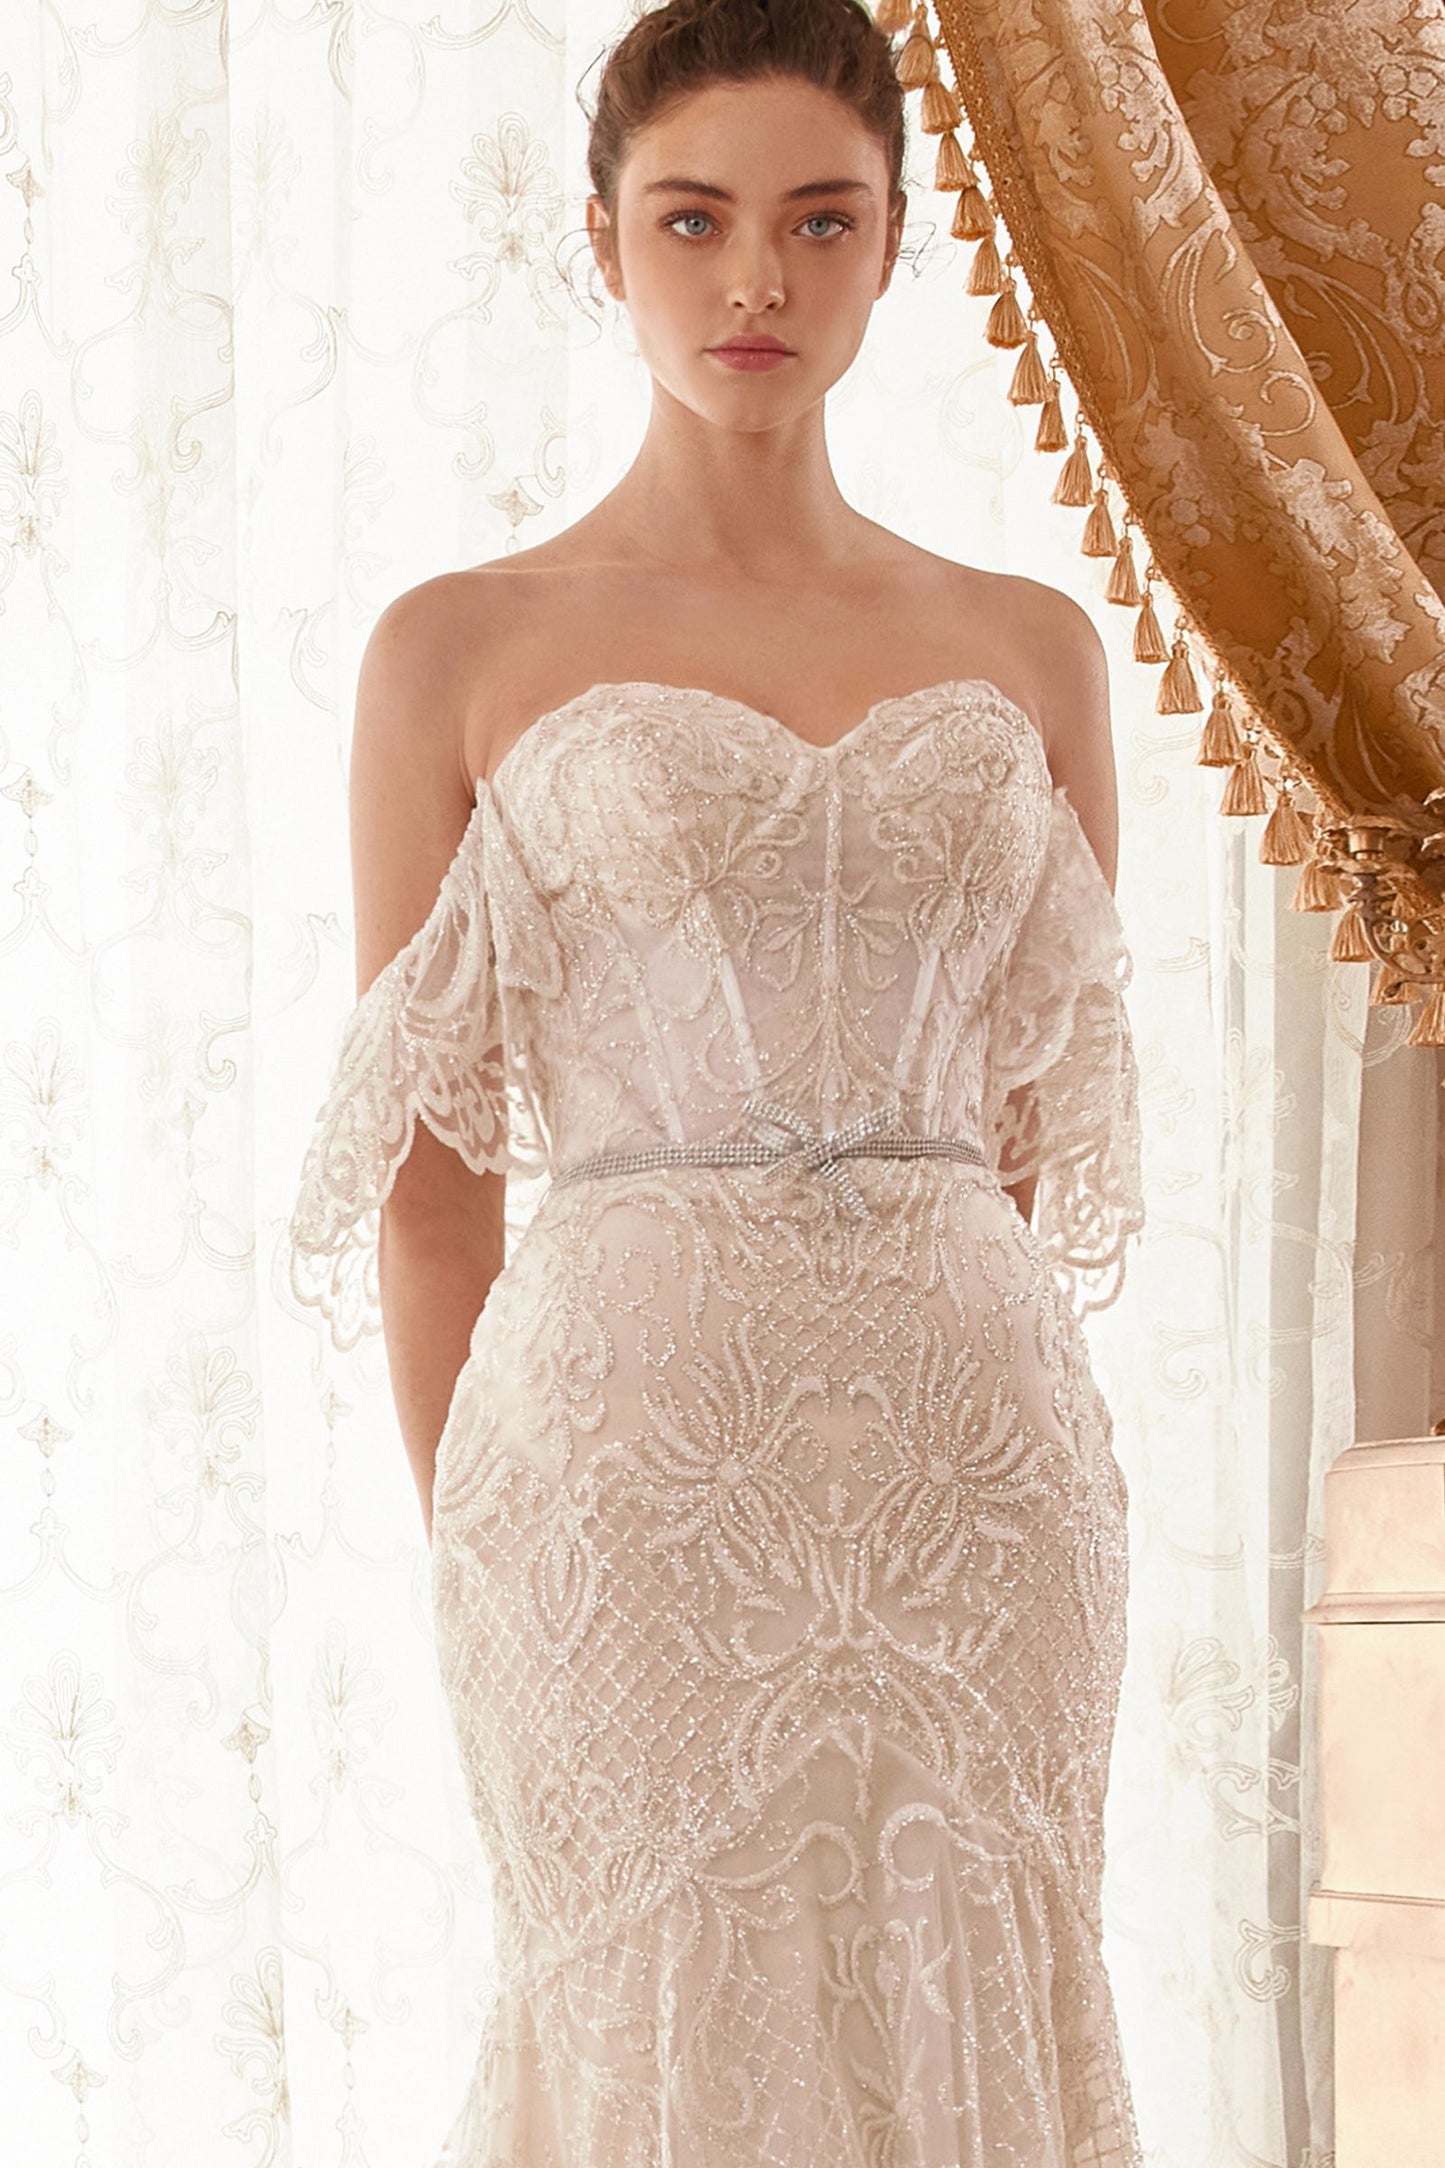 exquisito vestido de novia sirena sin tirantes con una preciosa tela blanca con motivos barrocos brillantes brilla con una elegancia romántica y un atrevido escote en forma de corazón